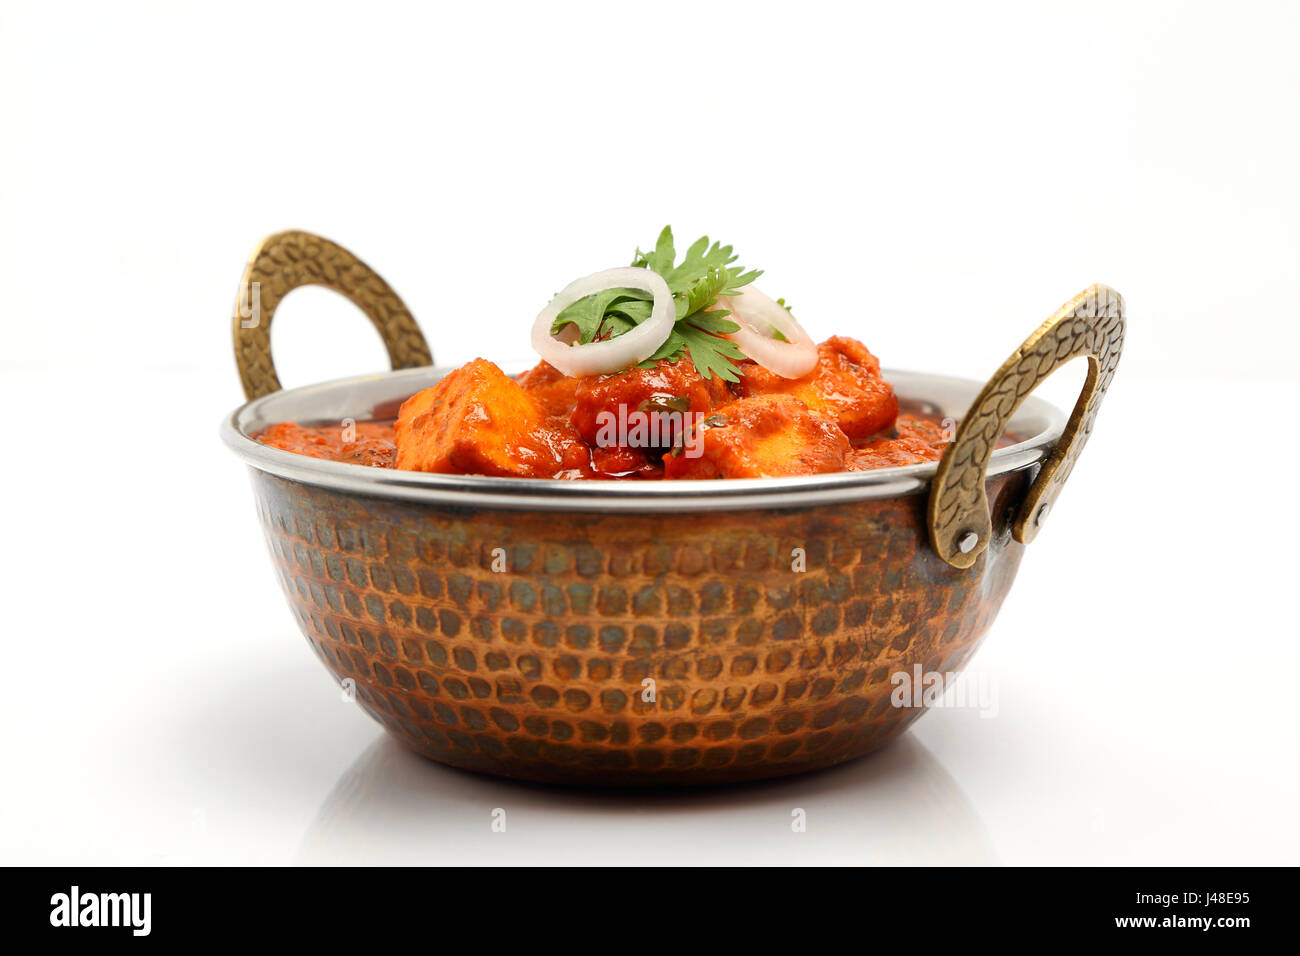 Indian Food oder indisches Curry in einer Schüssel Kupfer Messing. Stockfoto